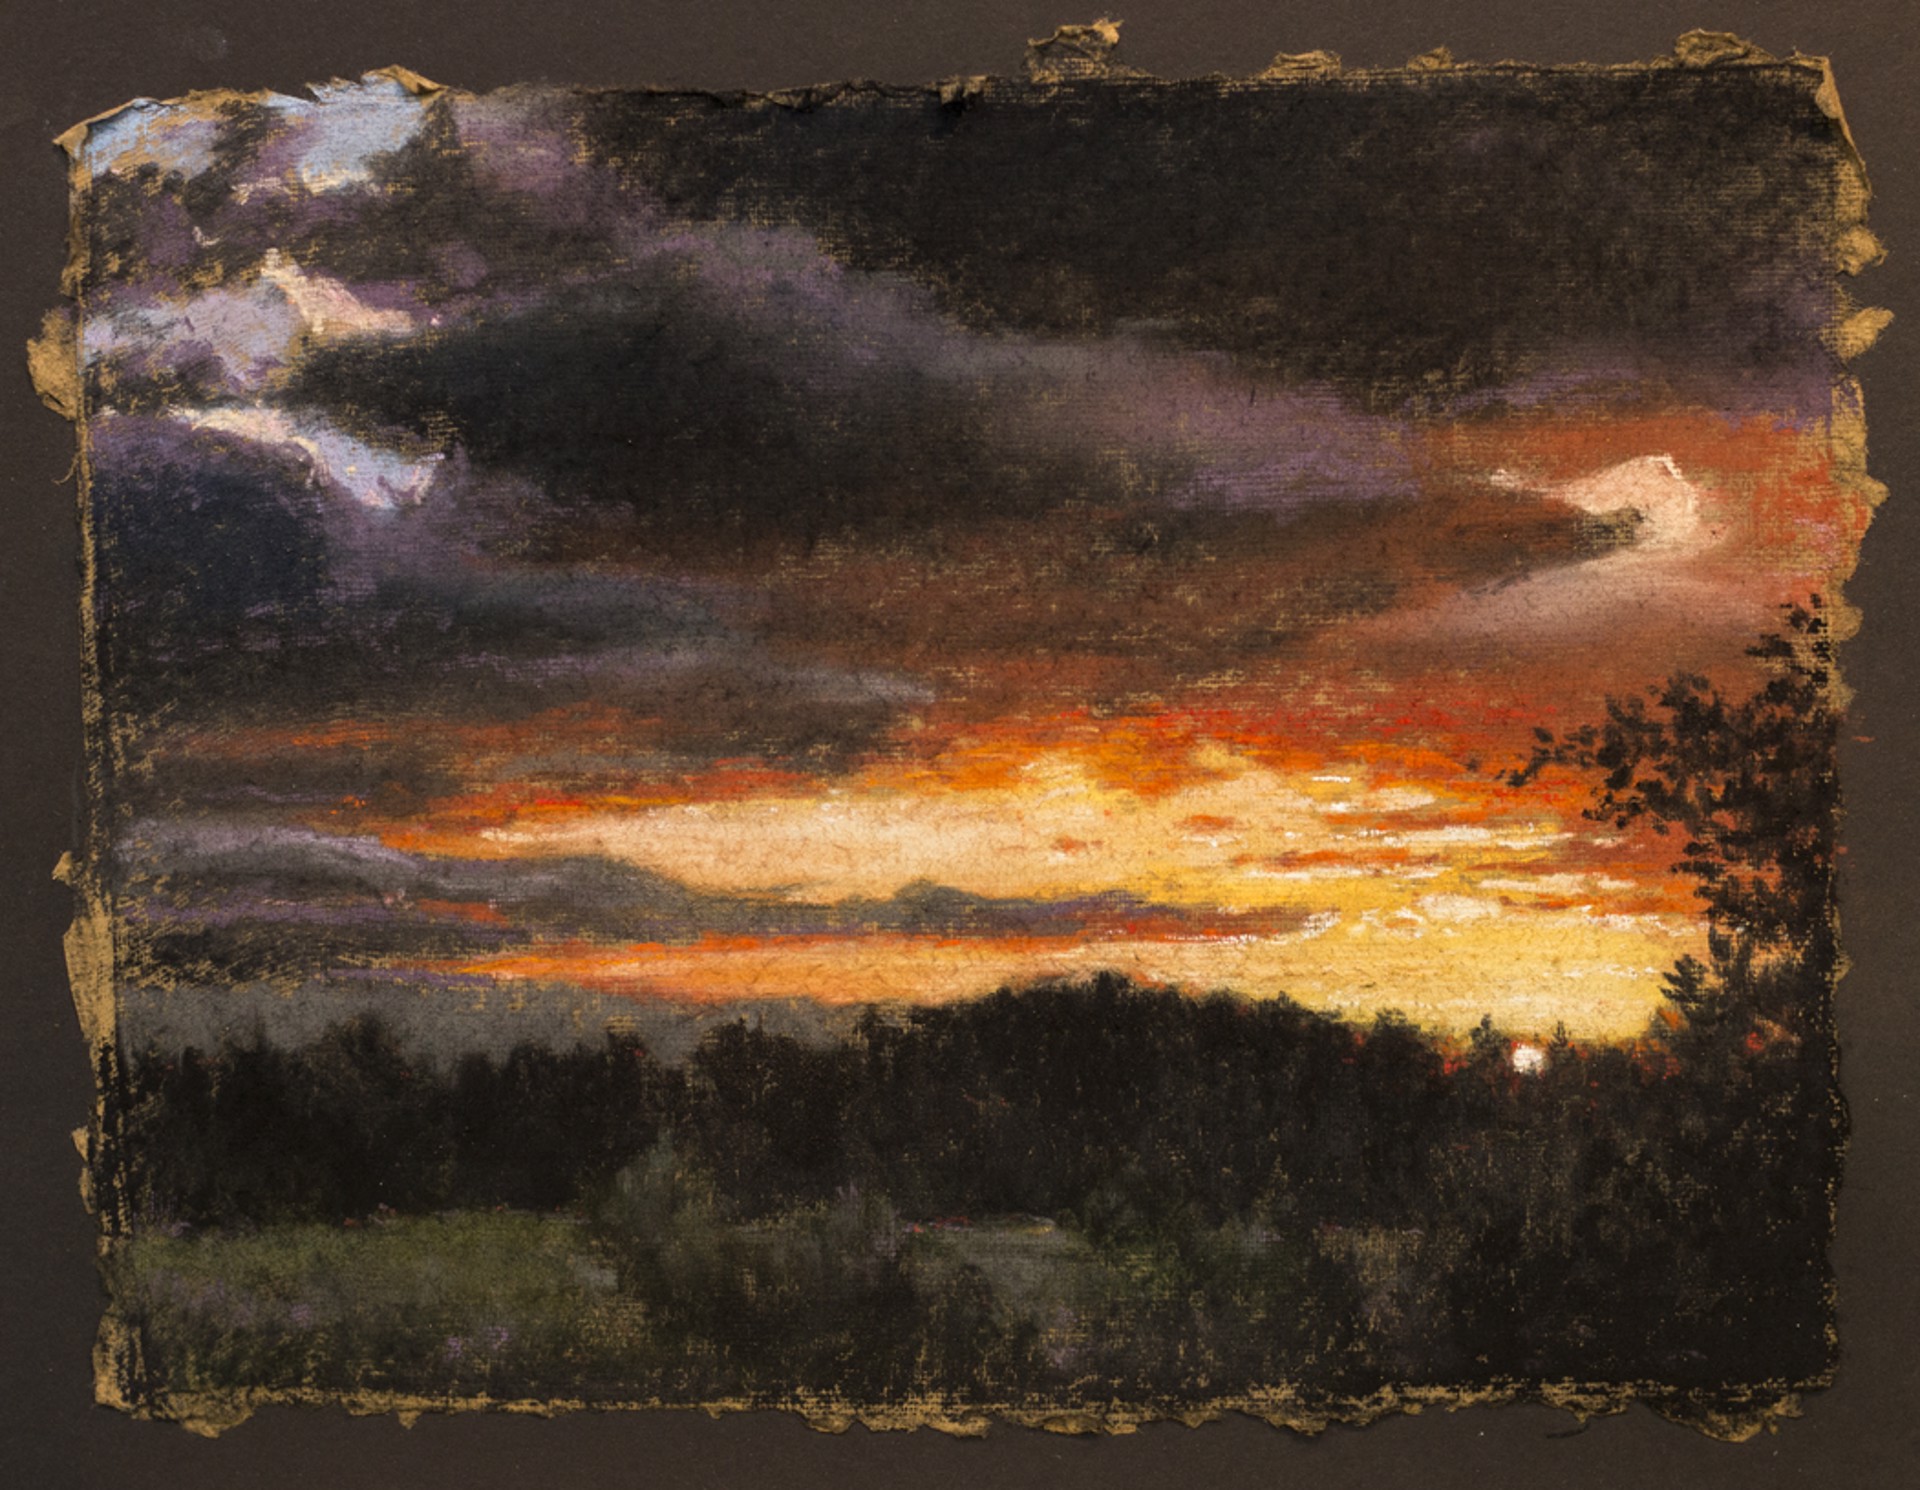 Stillness of a Sunset by Mark A. Henry